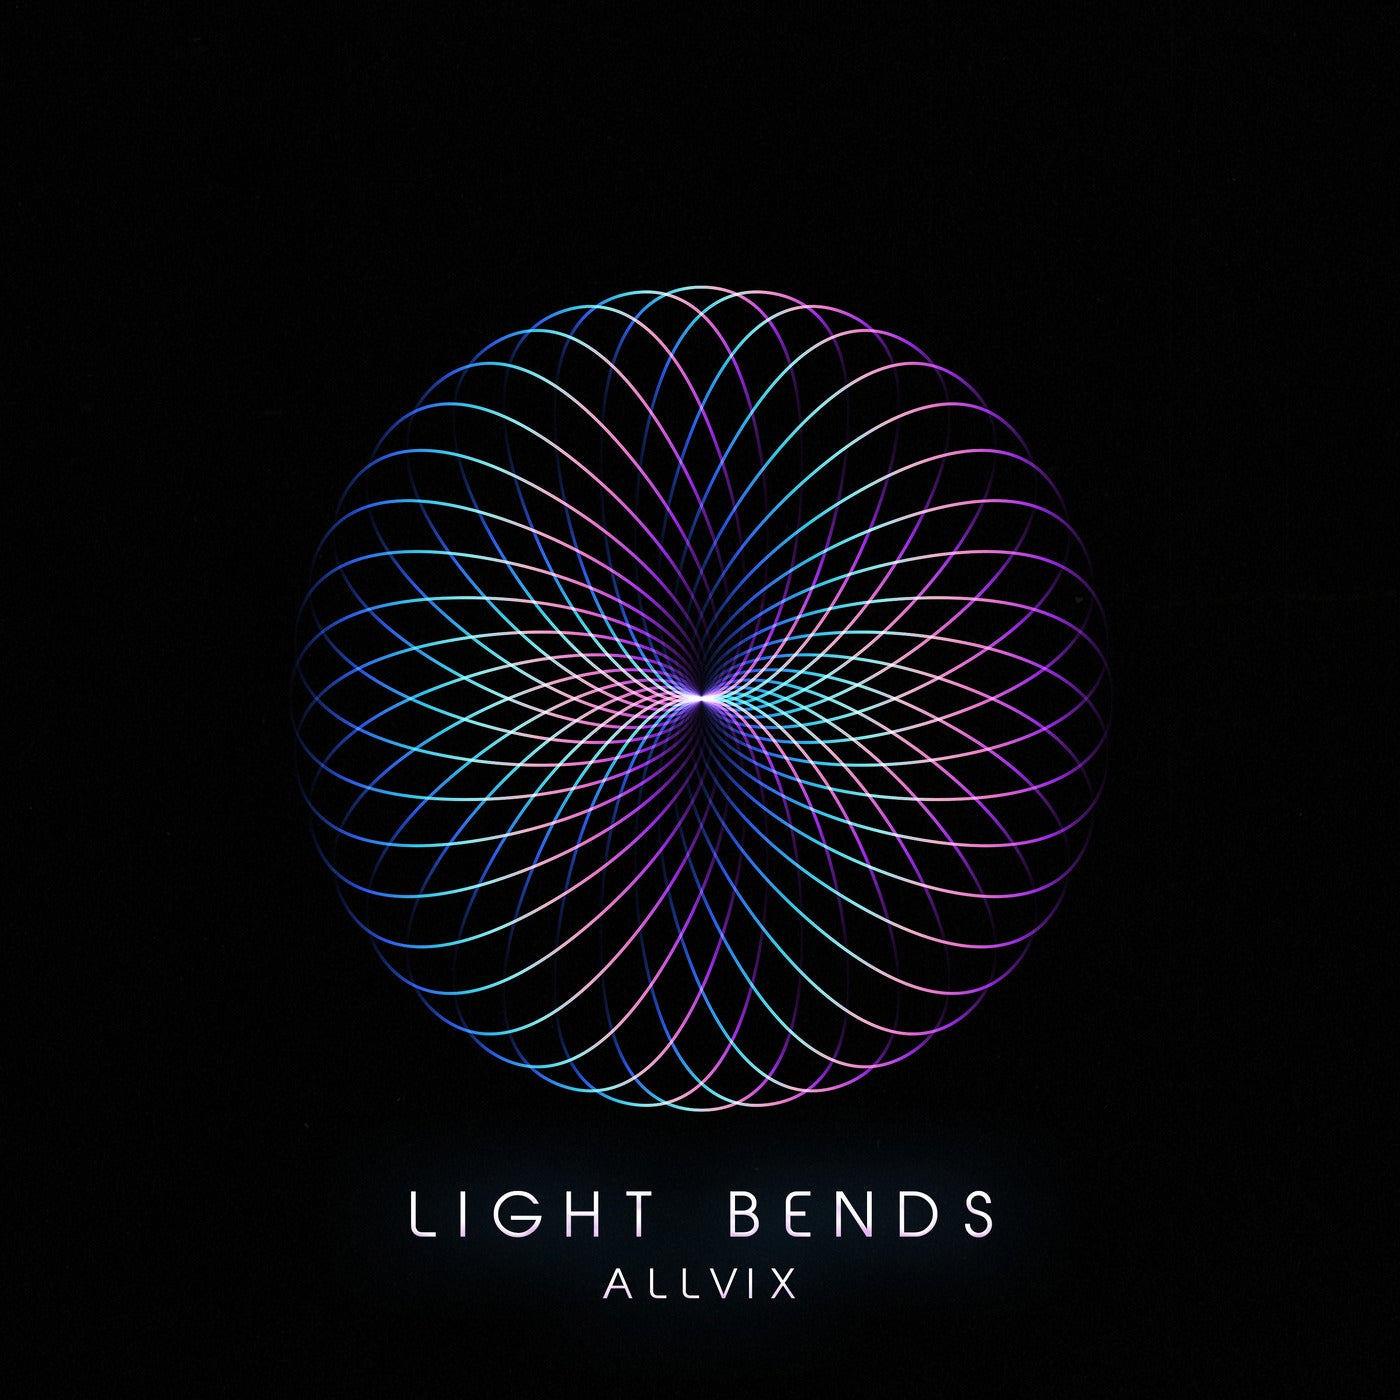 Light Bends